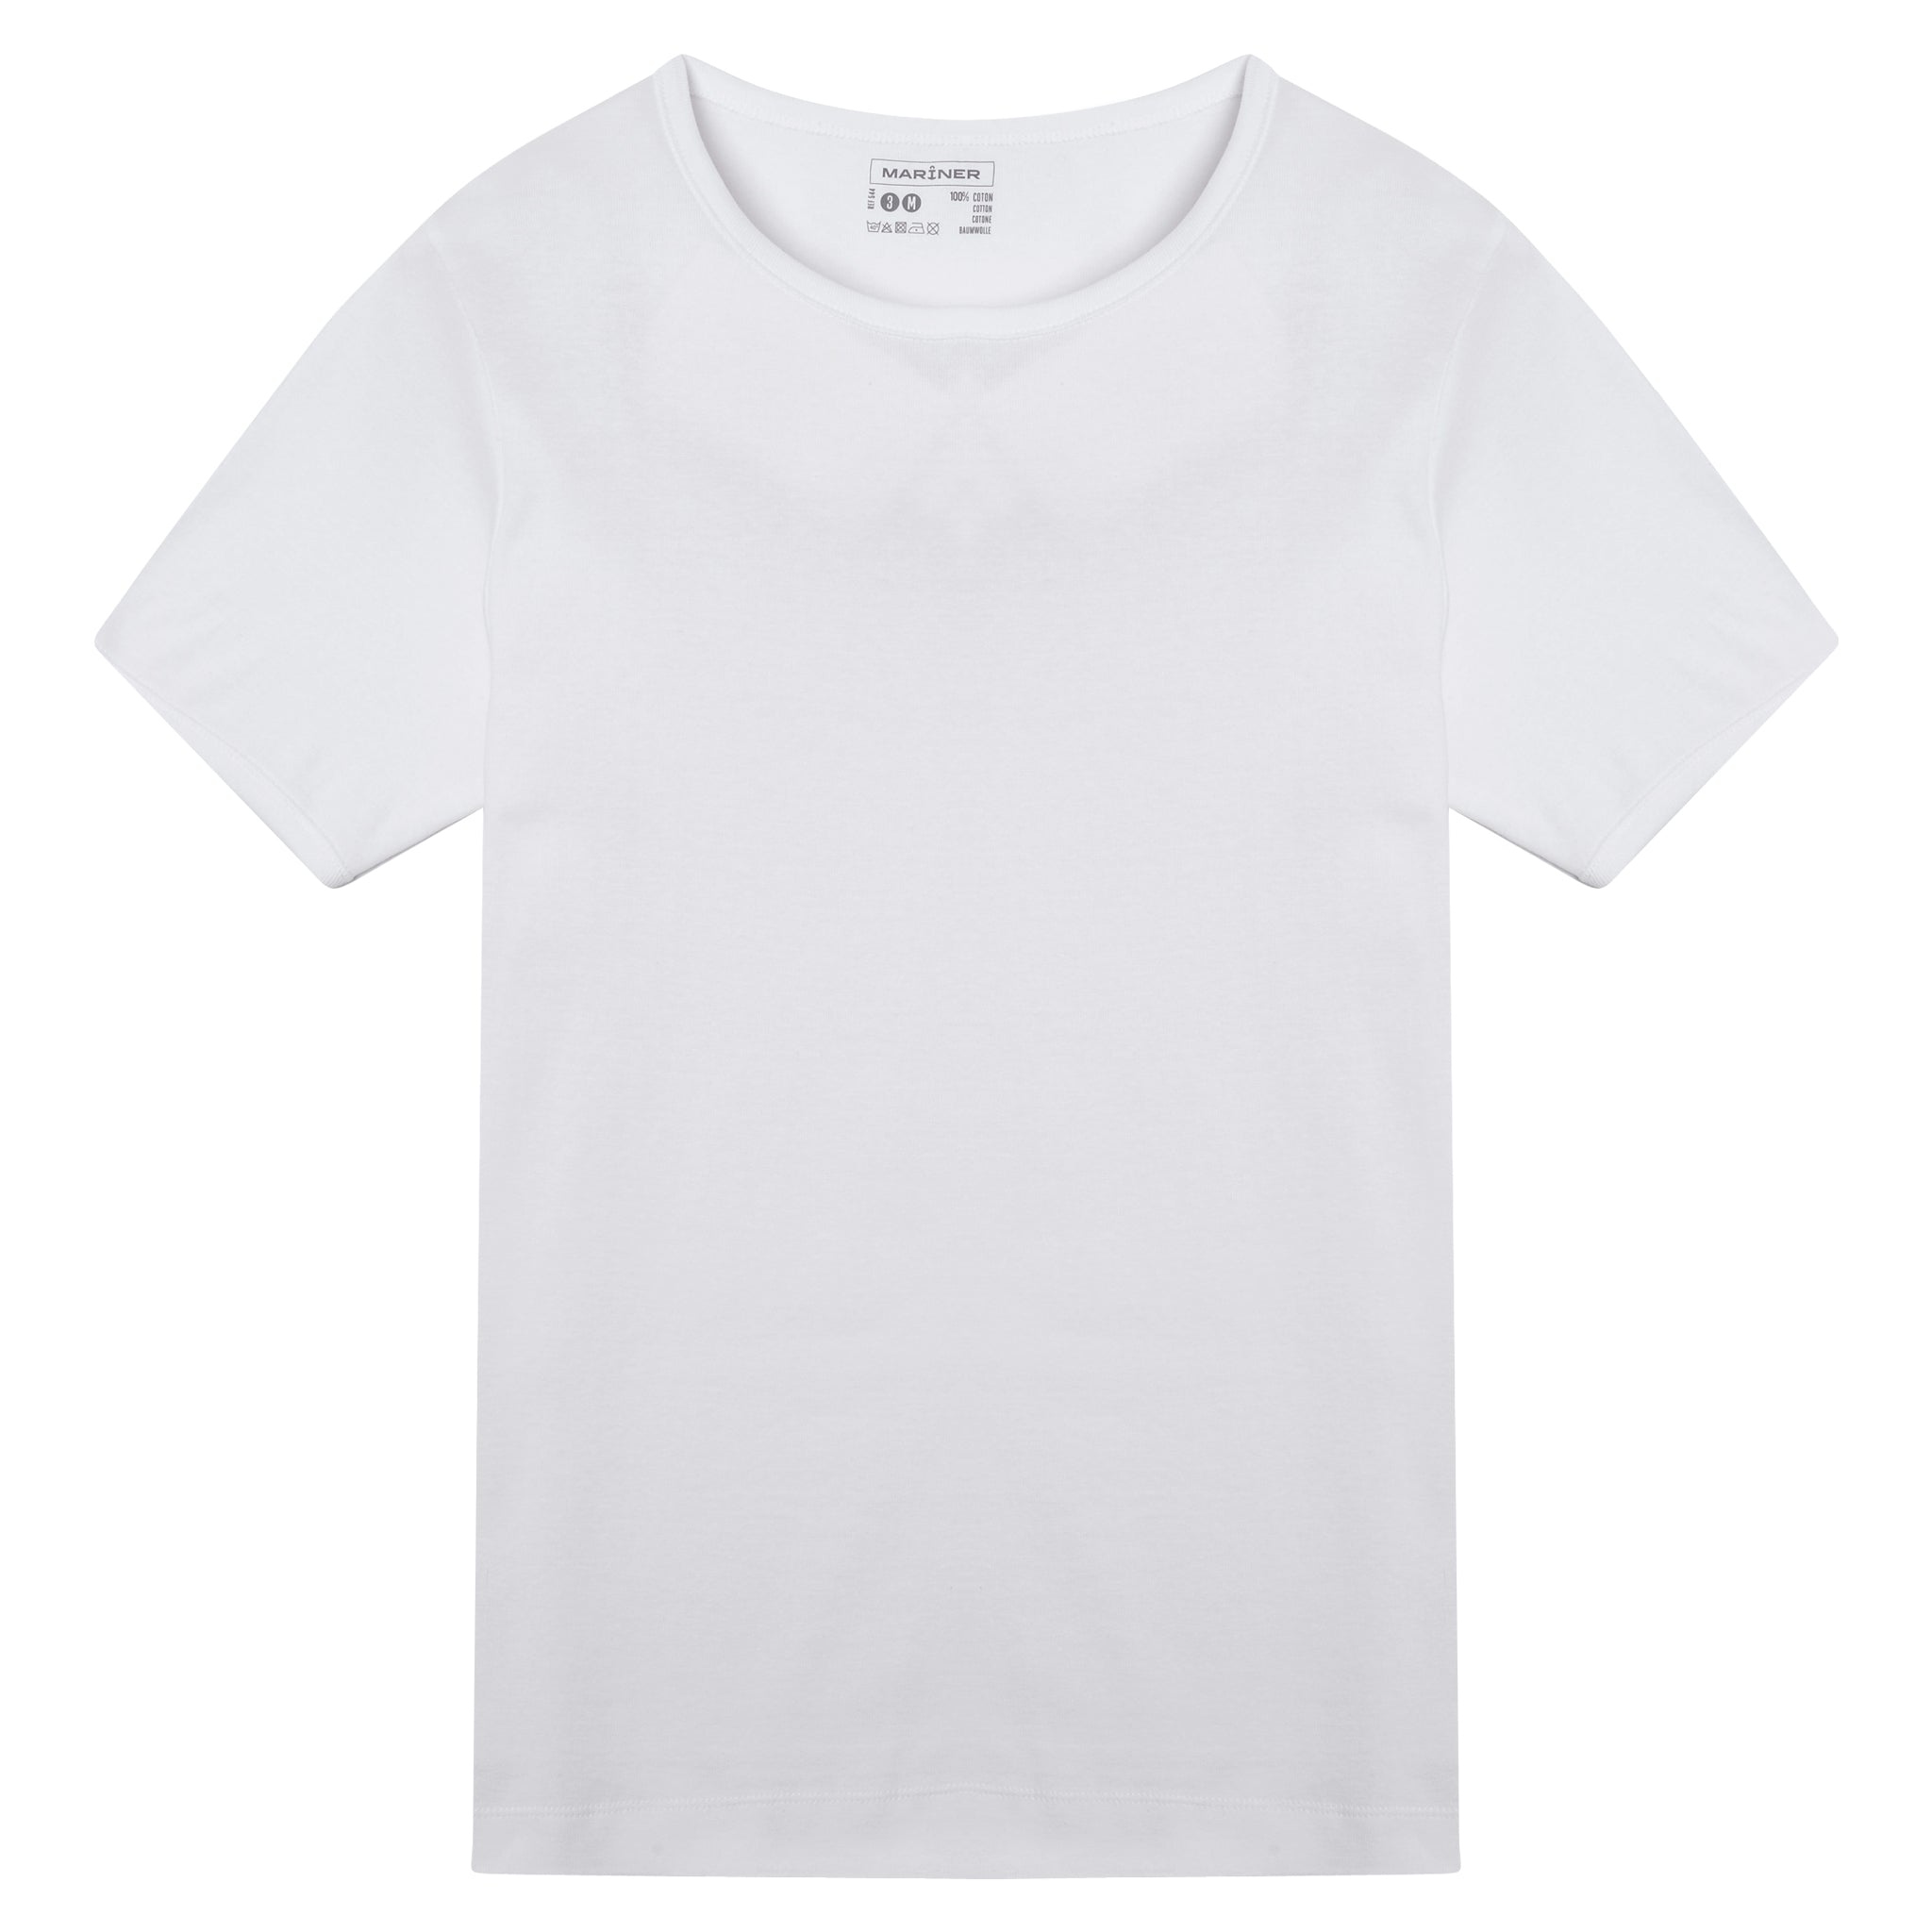 T-Shirt col Rond en Coton Fines Cotes   PAUL   Blanc